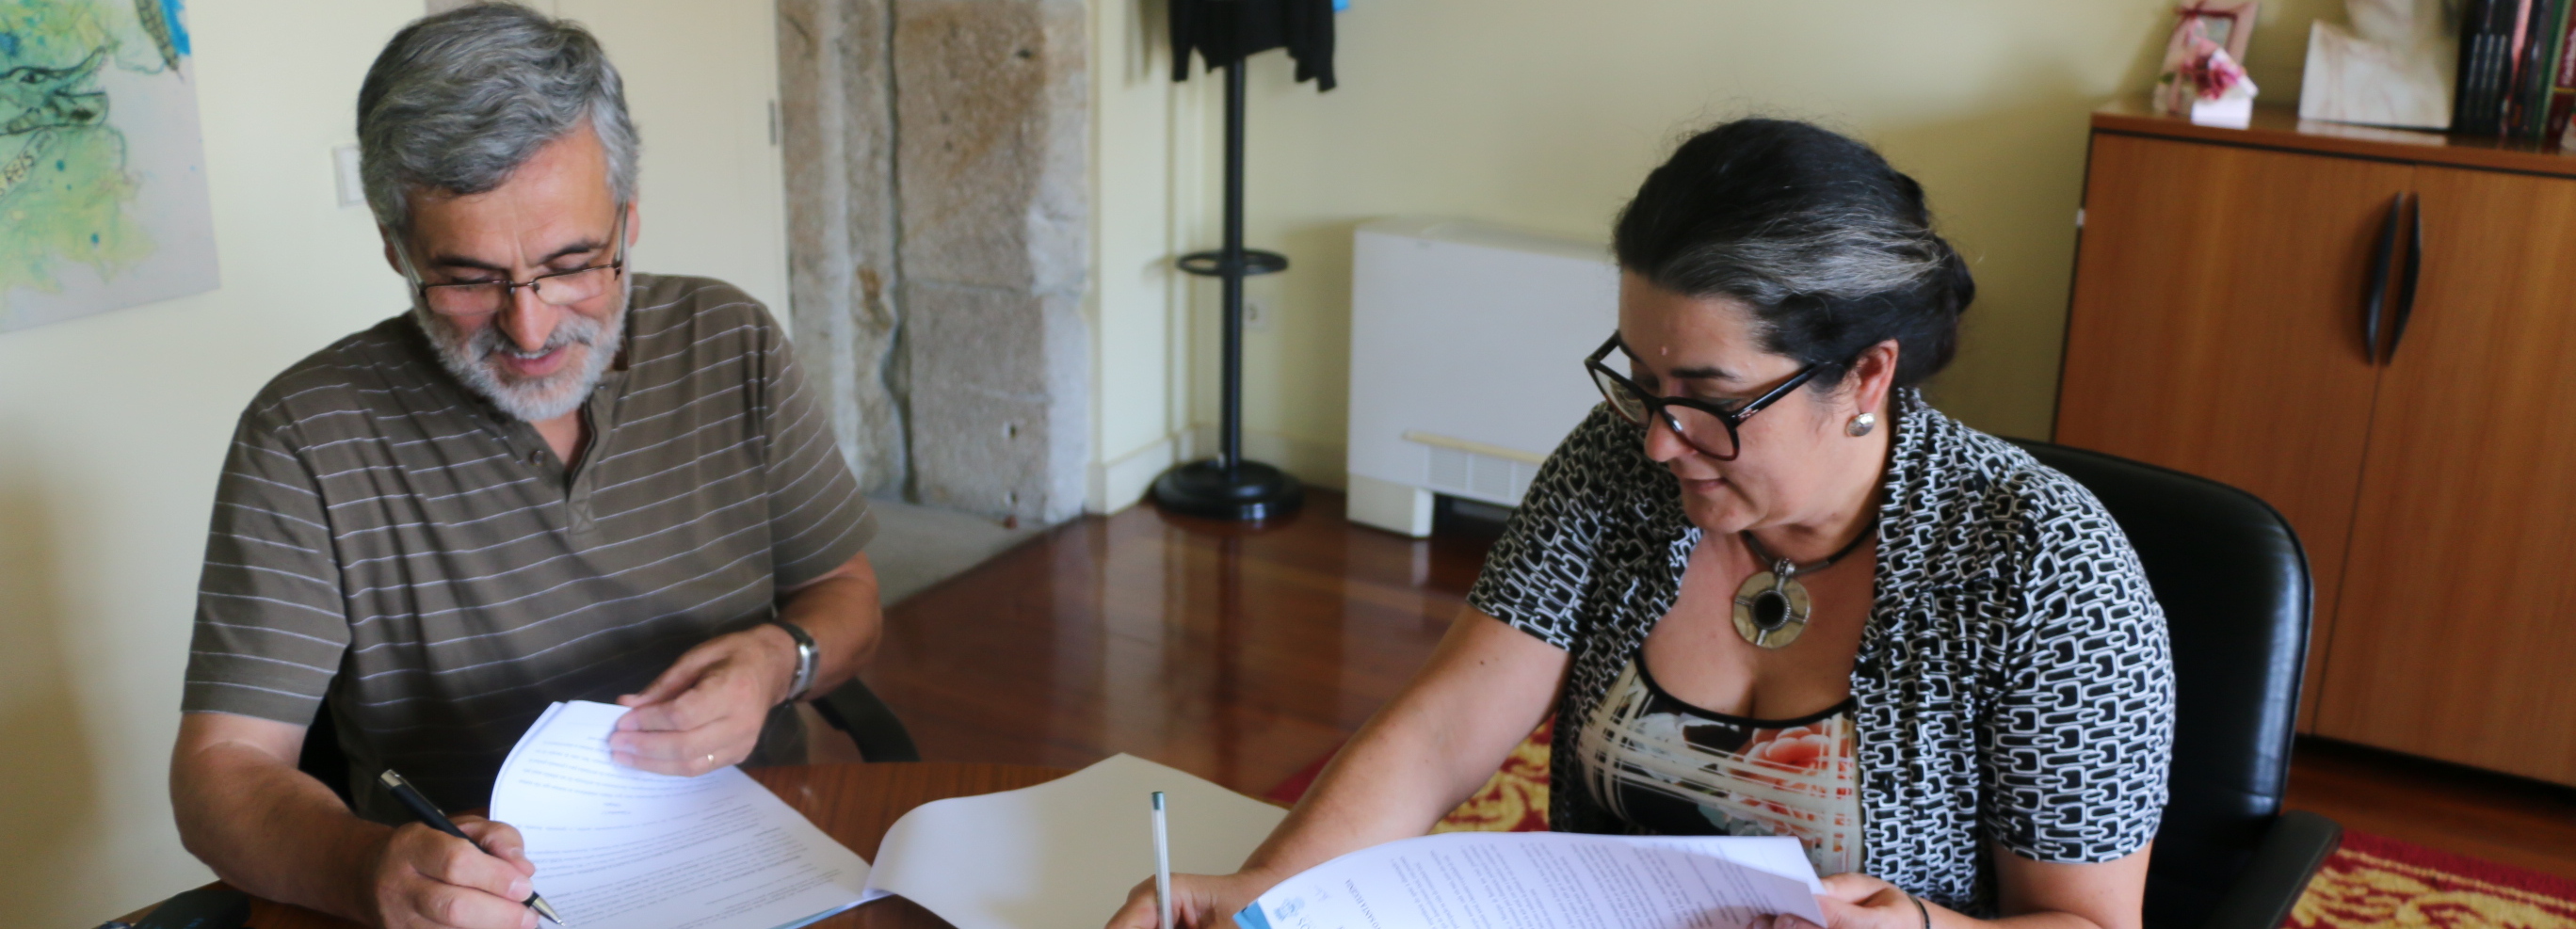 Câmara Municipal assina protocolo com a Associação Humanitária de Rio Covo Santa Eugénia